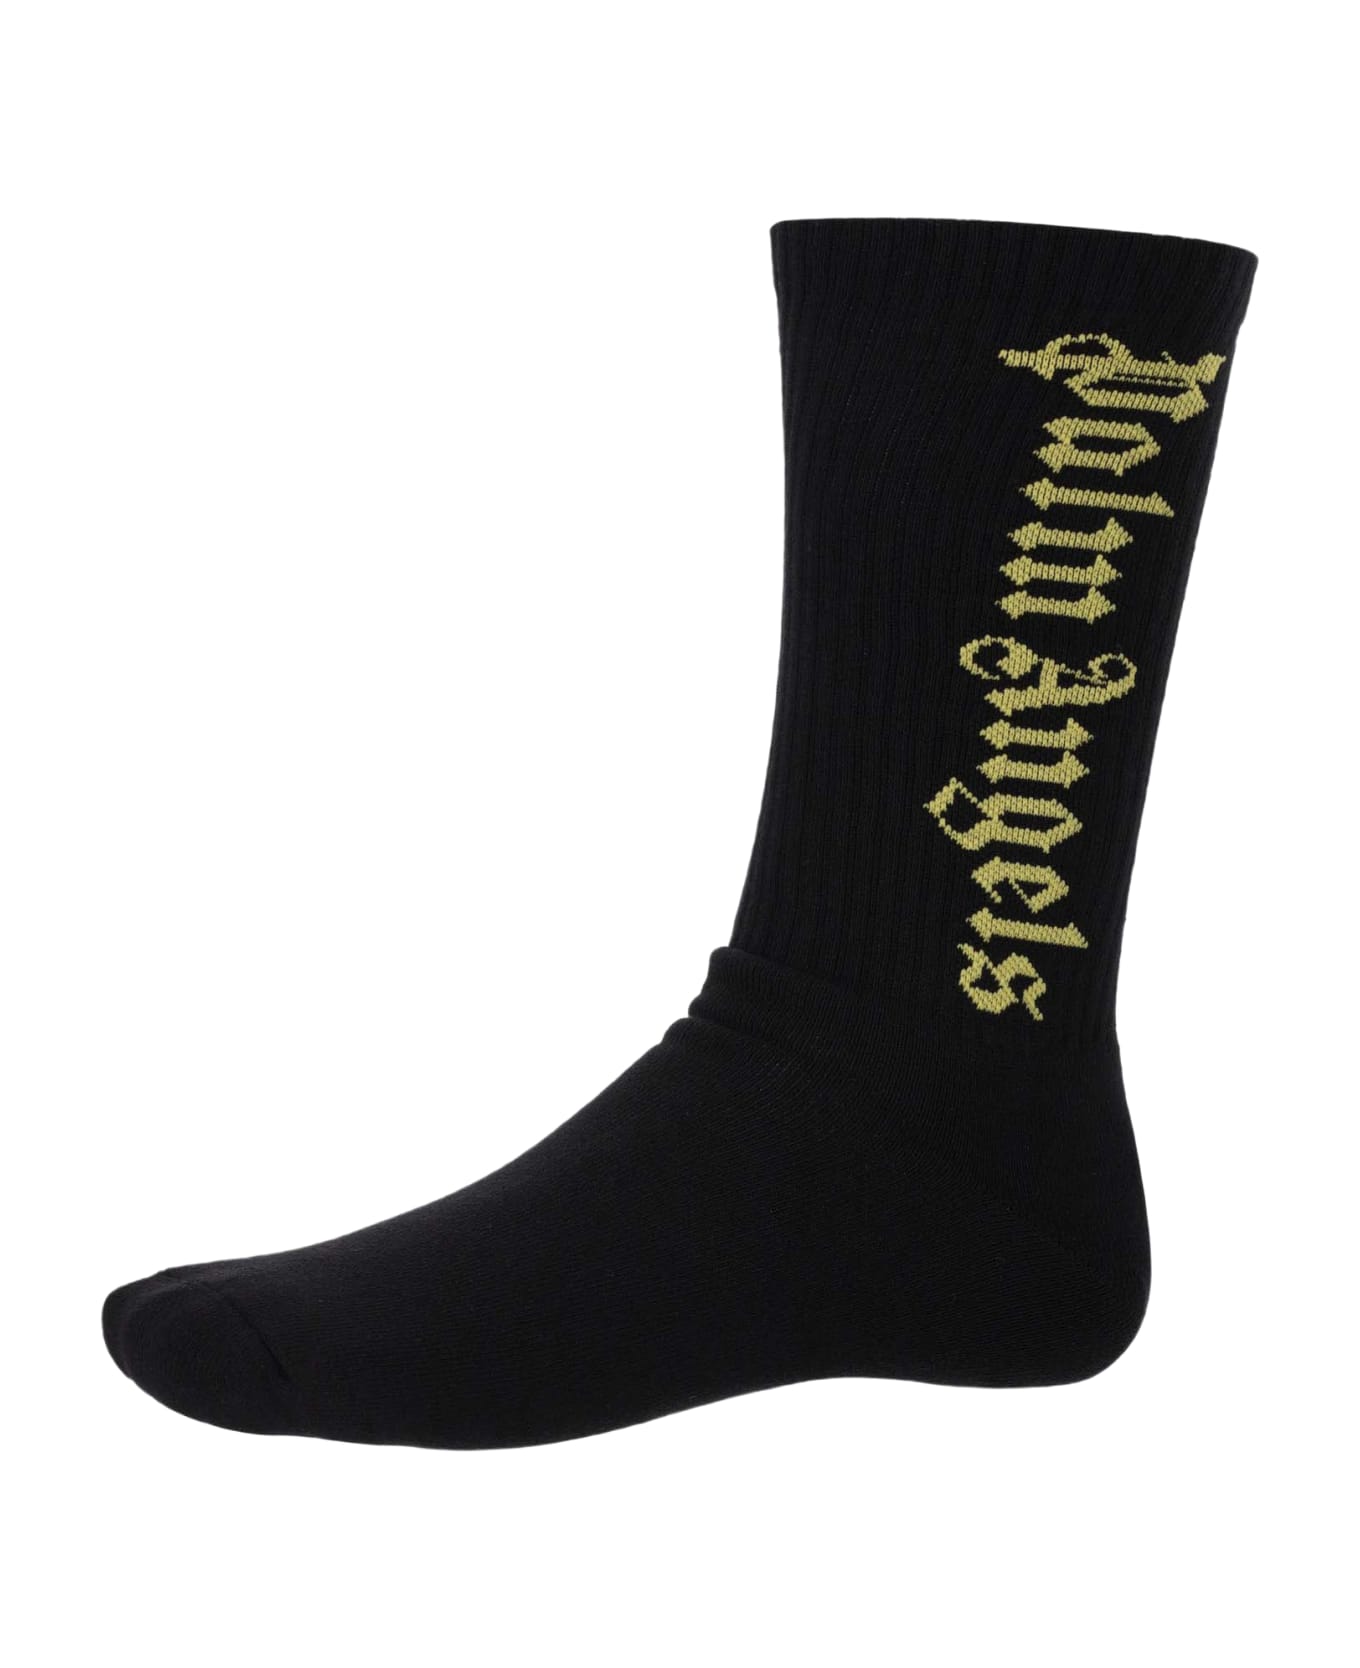 Palm Angels Tubolar Socks - Black 靴下